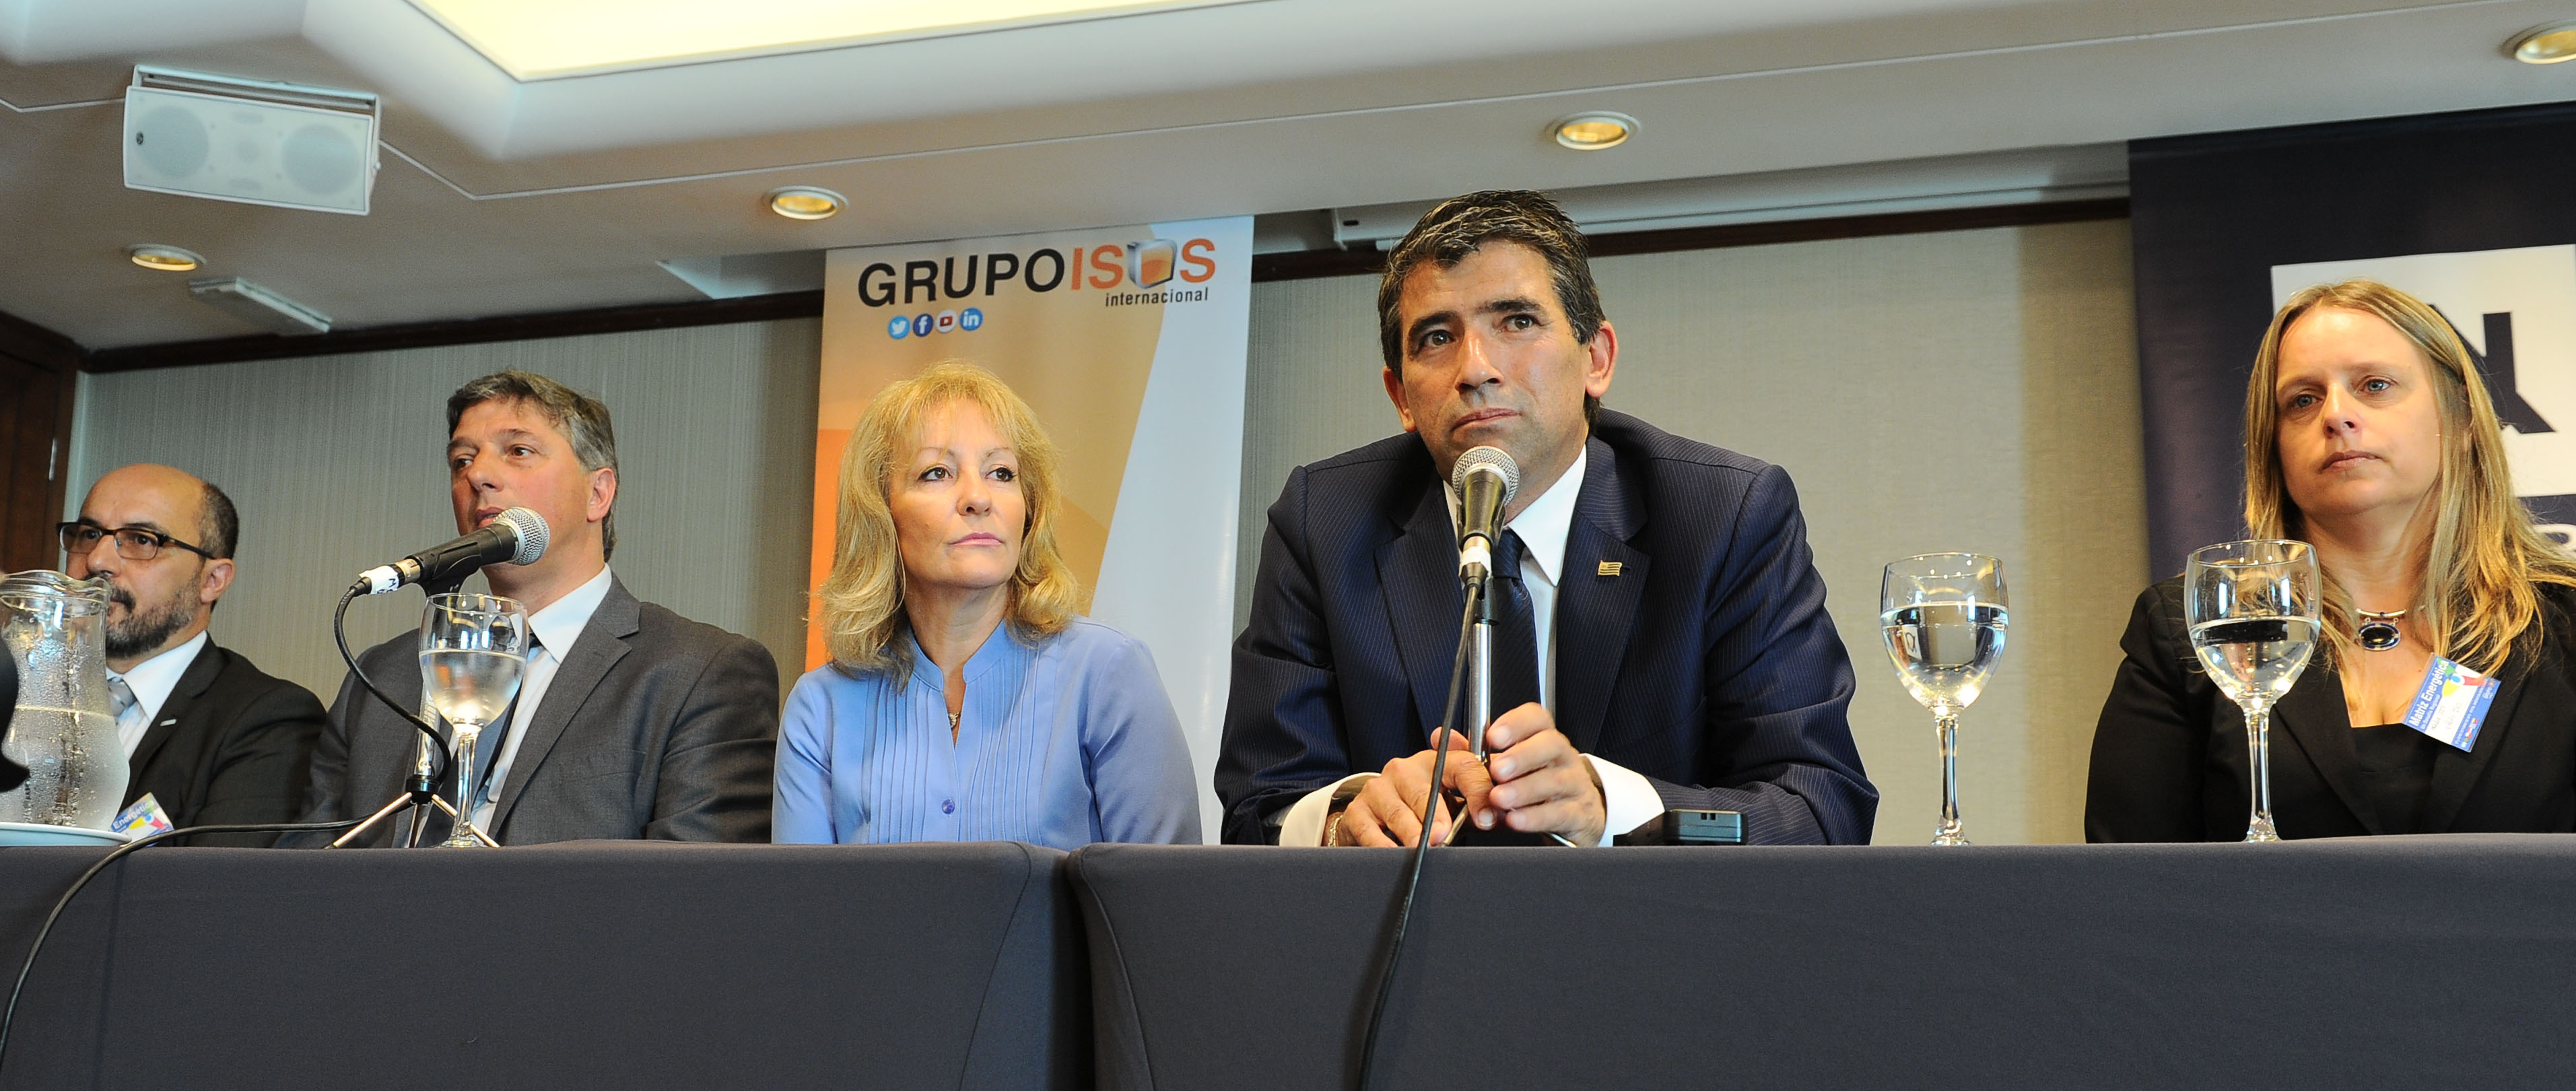 Raúl Sendic y Carolina Cosse en evento Matriz Energética Desafíos